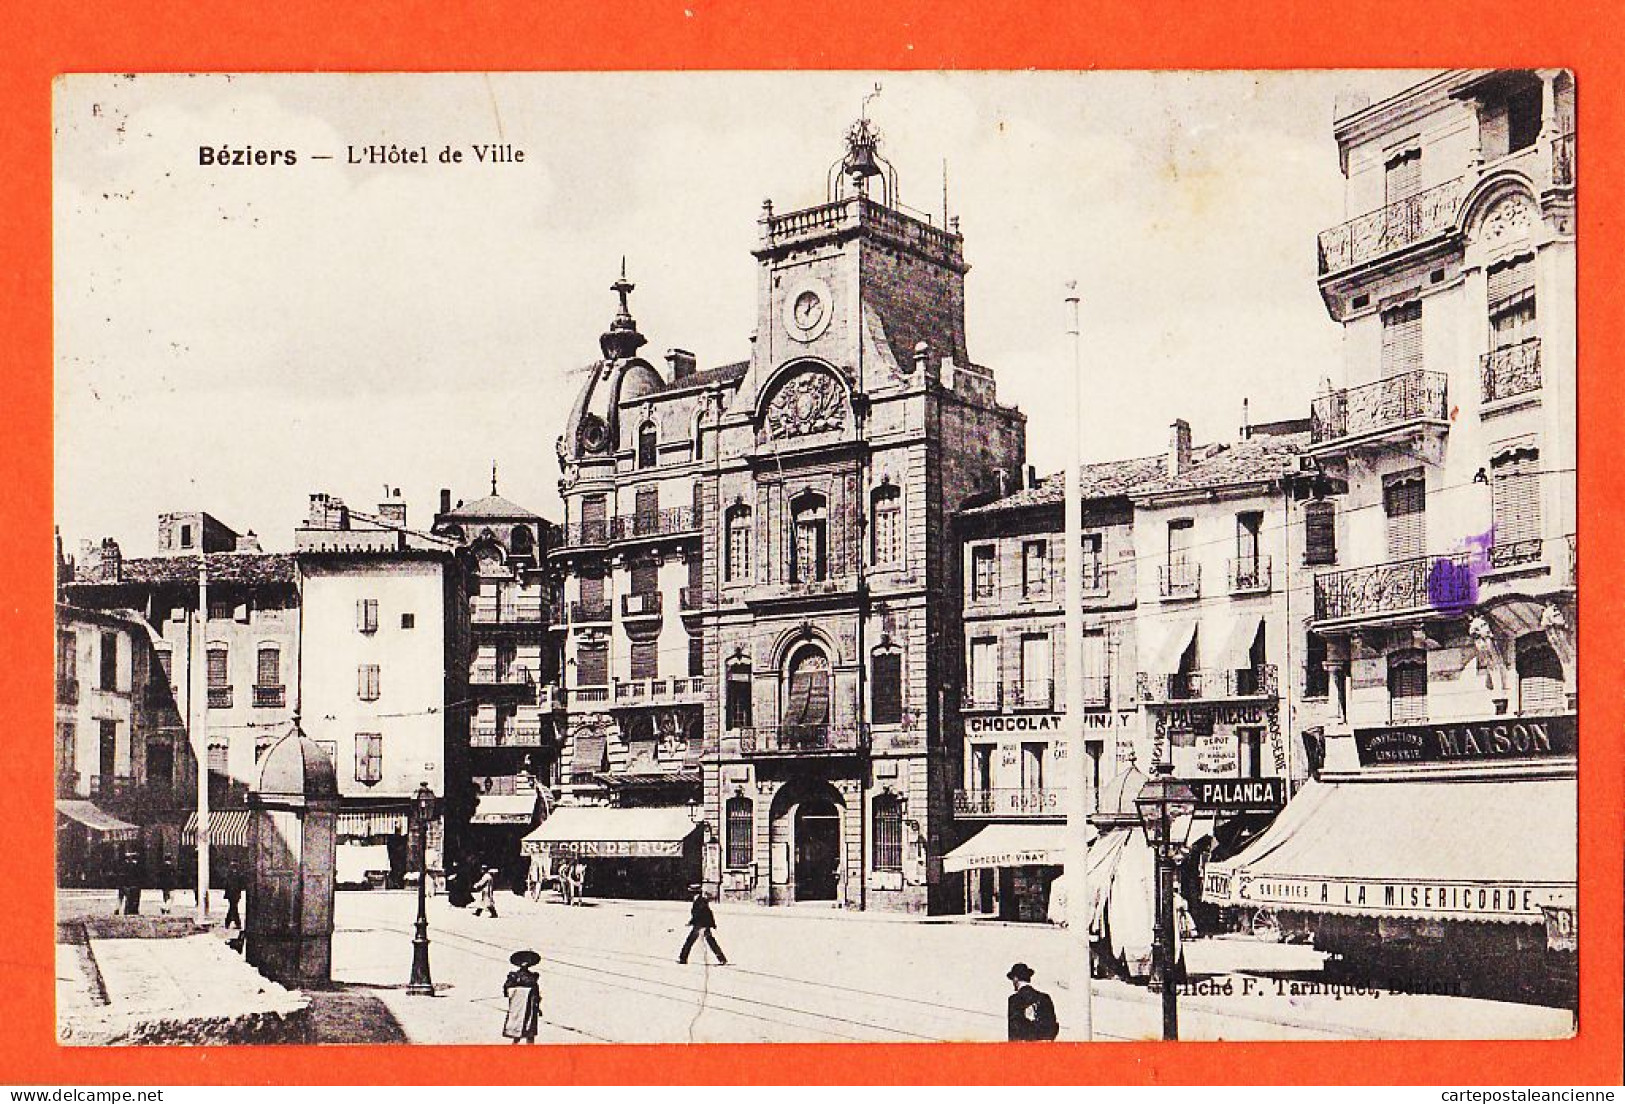 38562 / ⭐ BEZIERS 34-Hérault Hotel De Ville 1914 De Abel à Marc VILAREM Propriétaire Port-Vendres Cliché TARNIQUET - Beziers